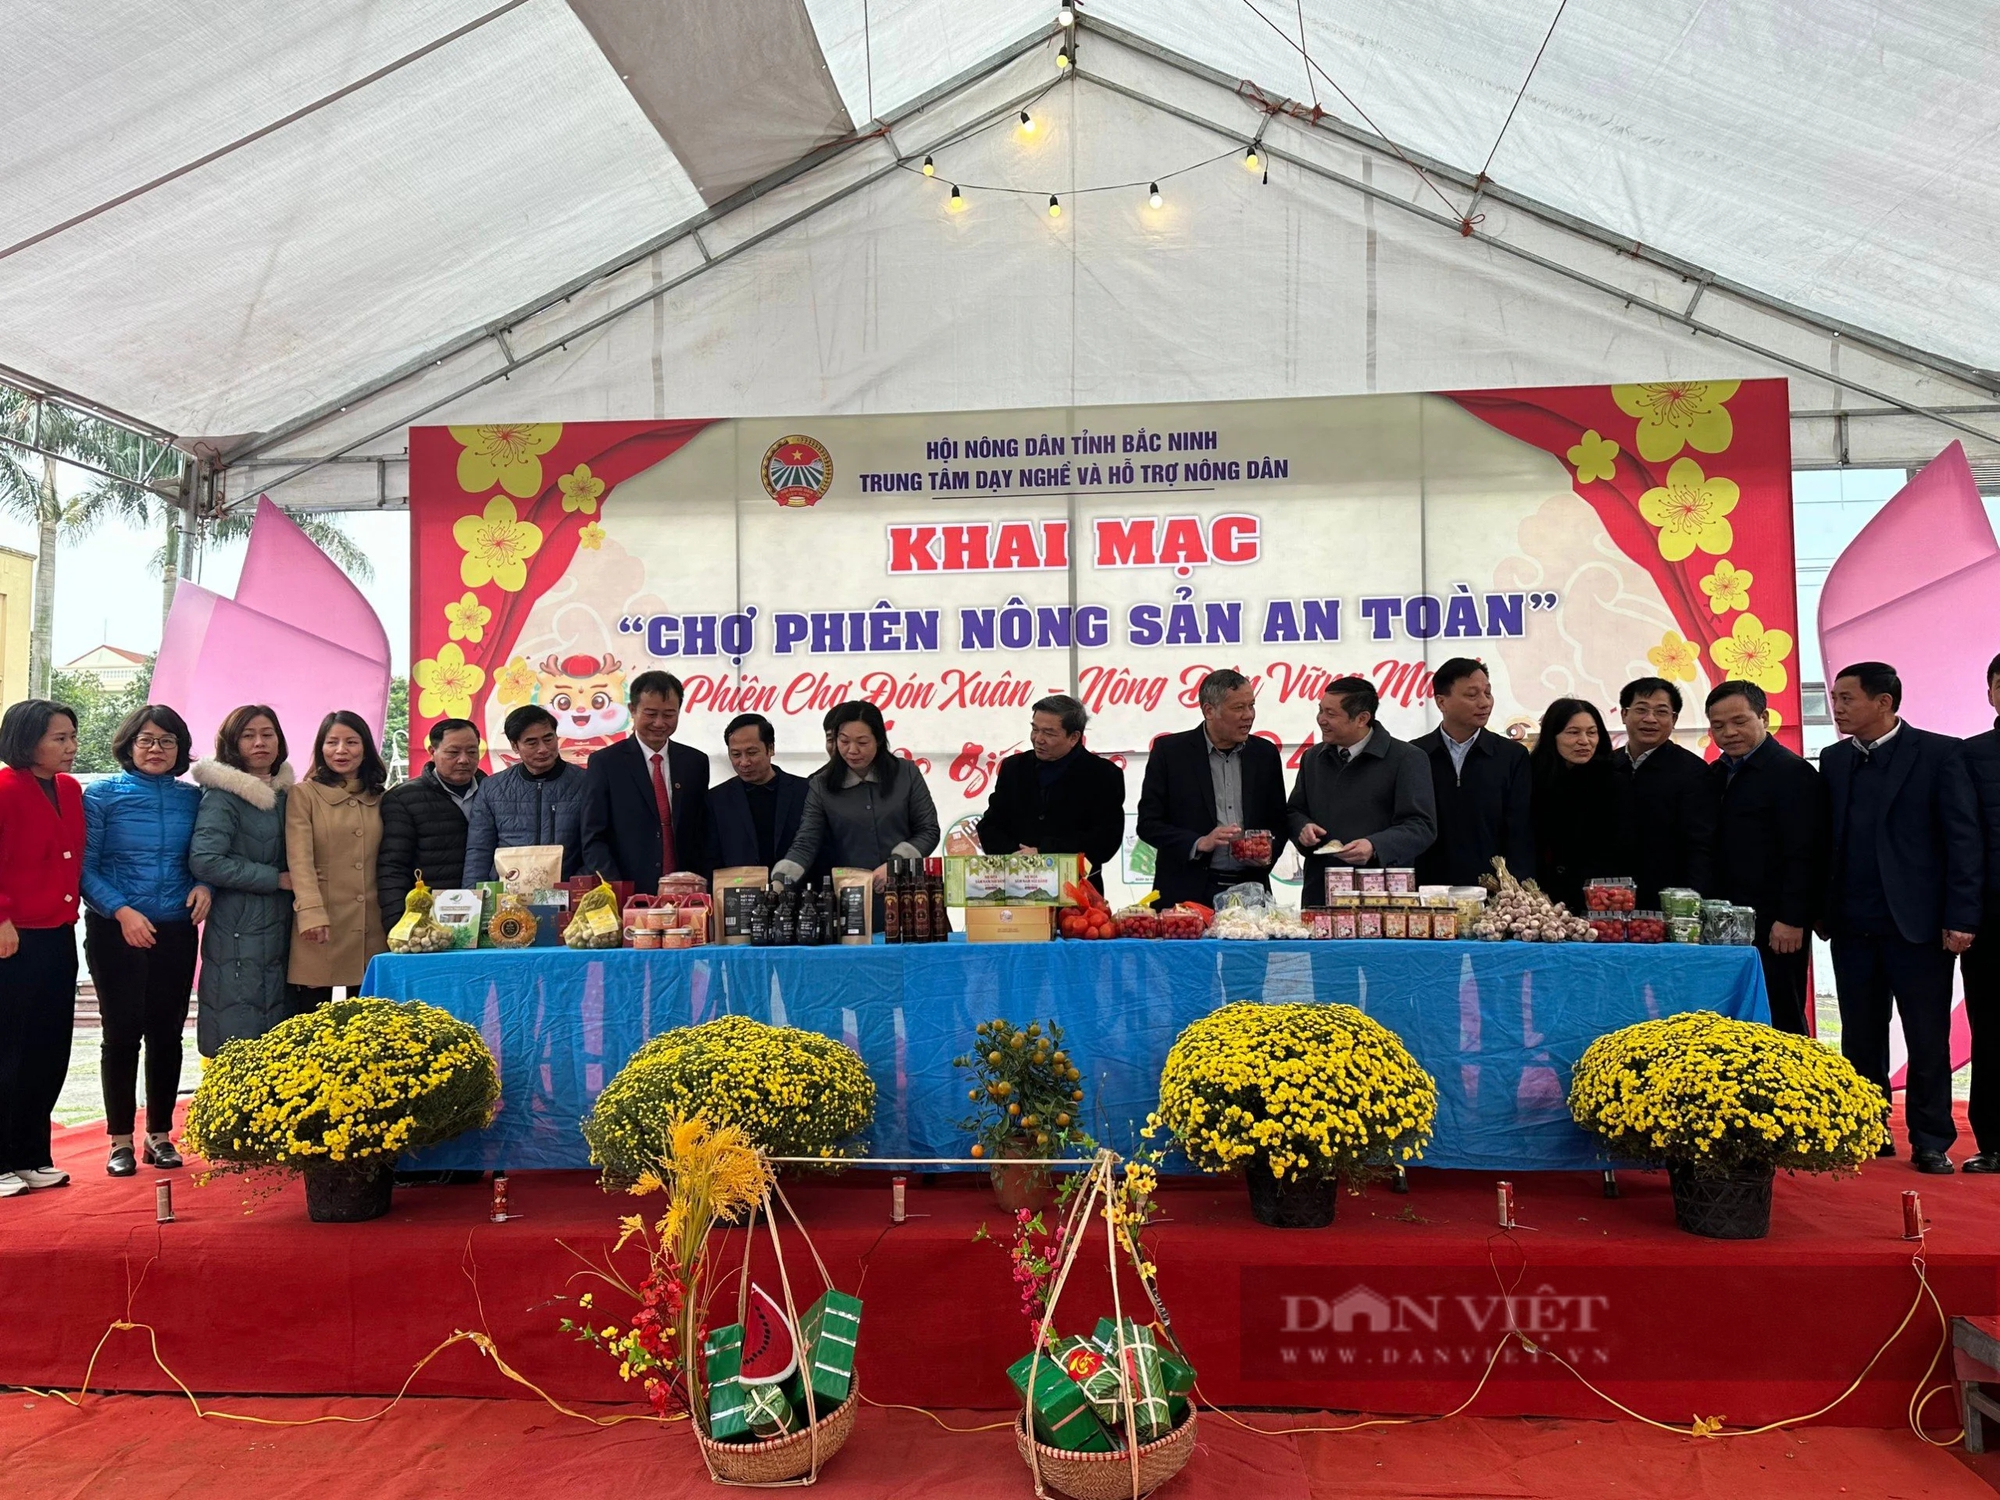 Hội Nông dân tỉnh Bắc Ninh khai mạc chợ phiên nông sản an toàn- Ảnh 2.